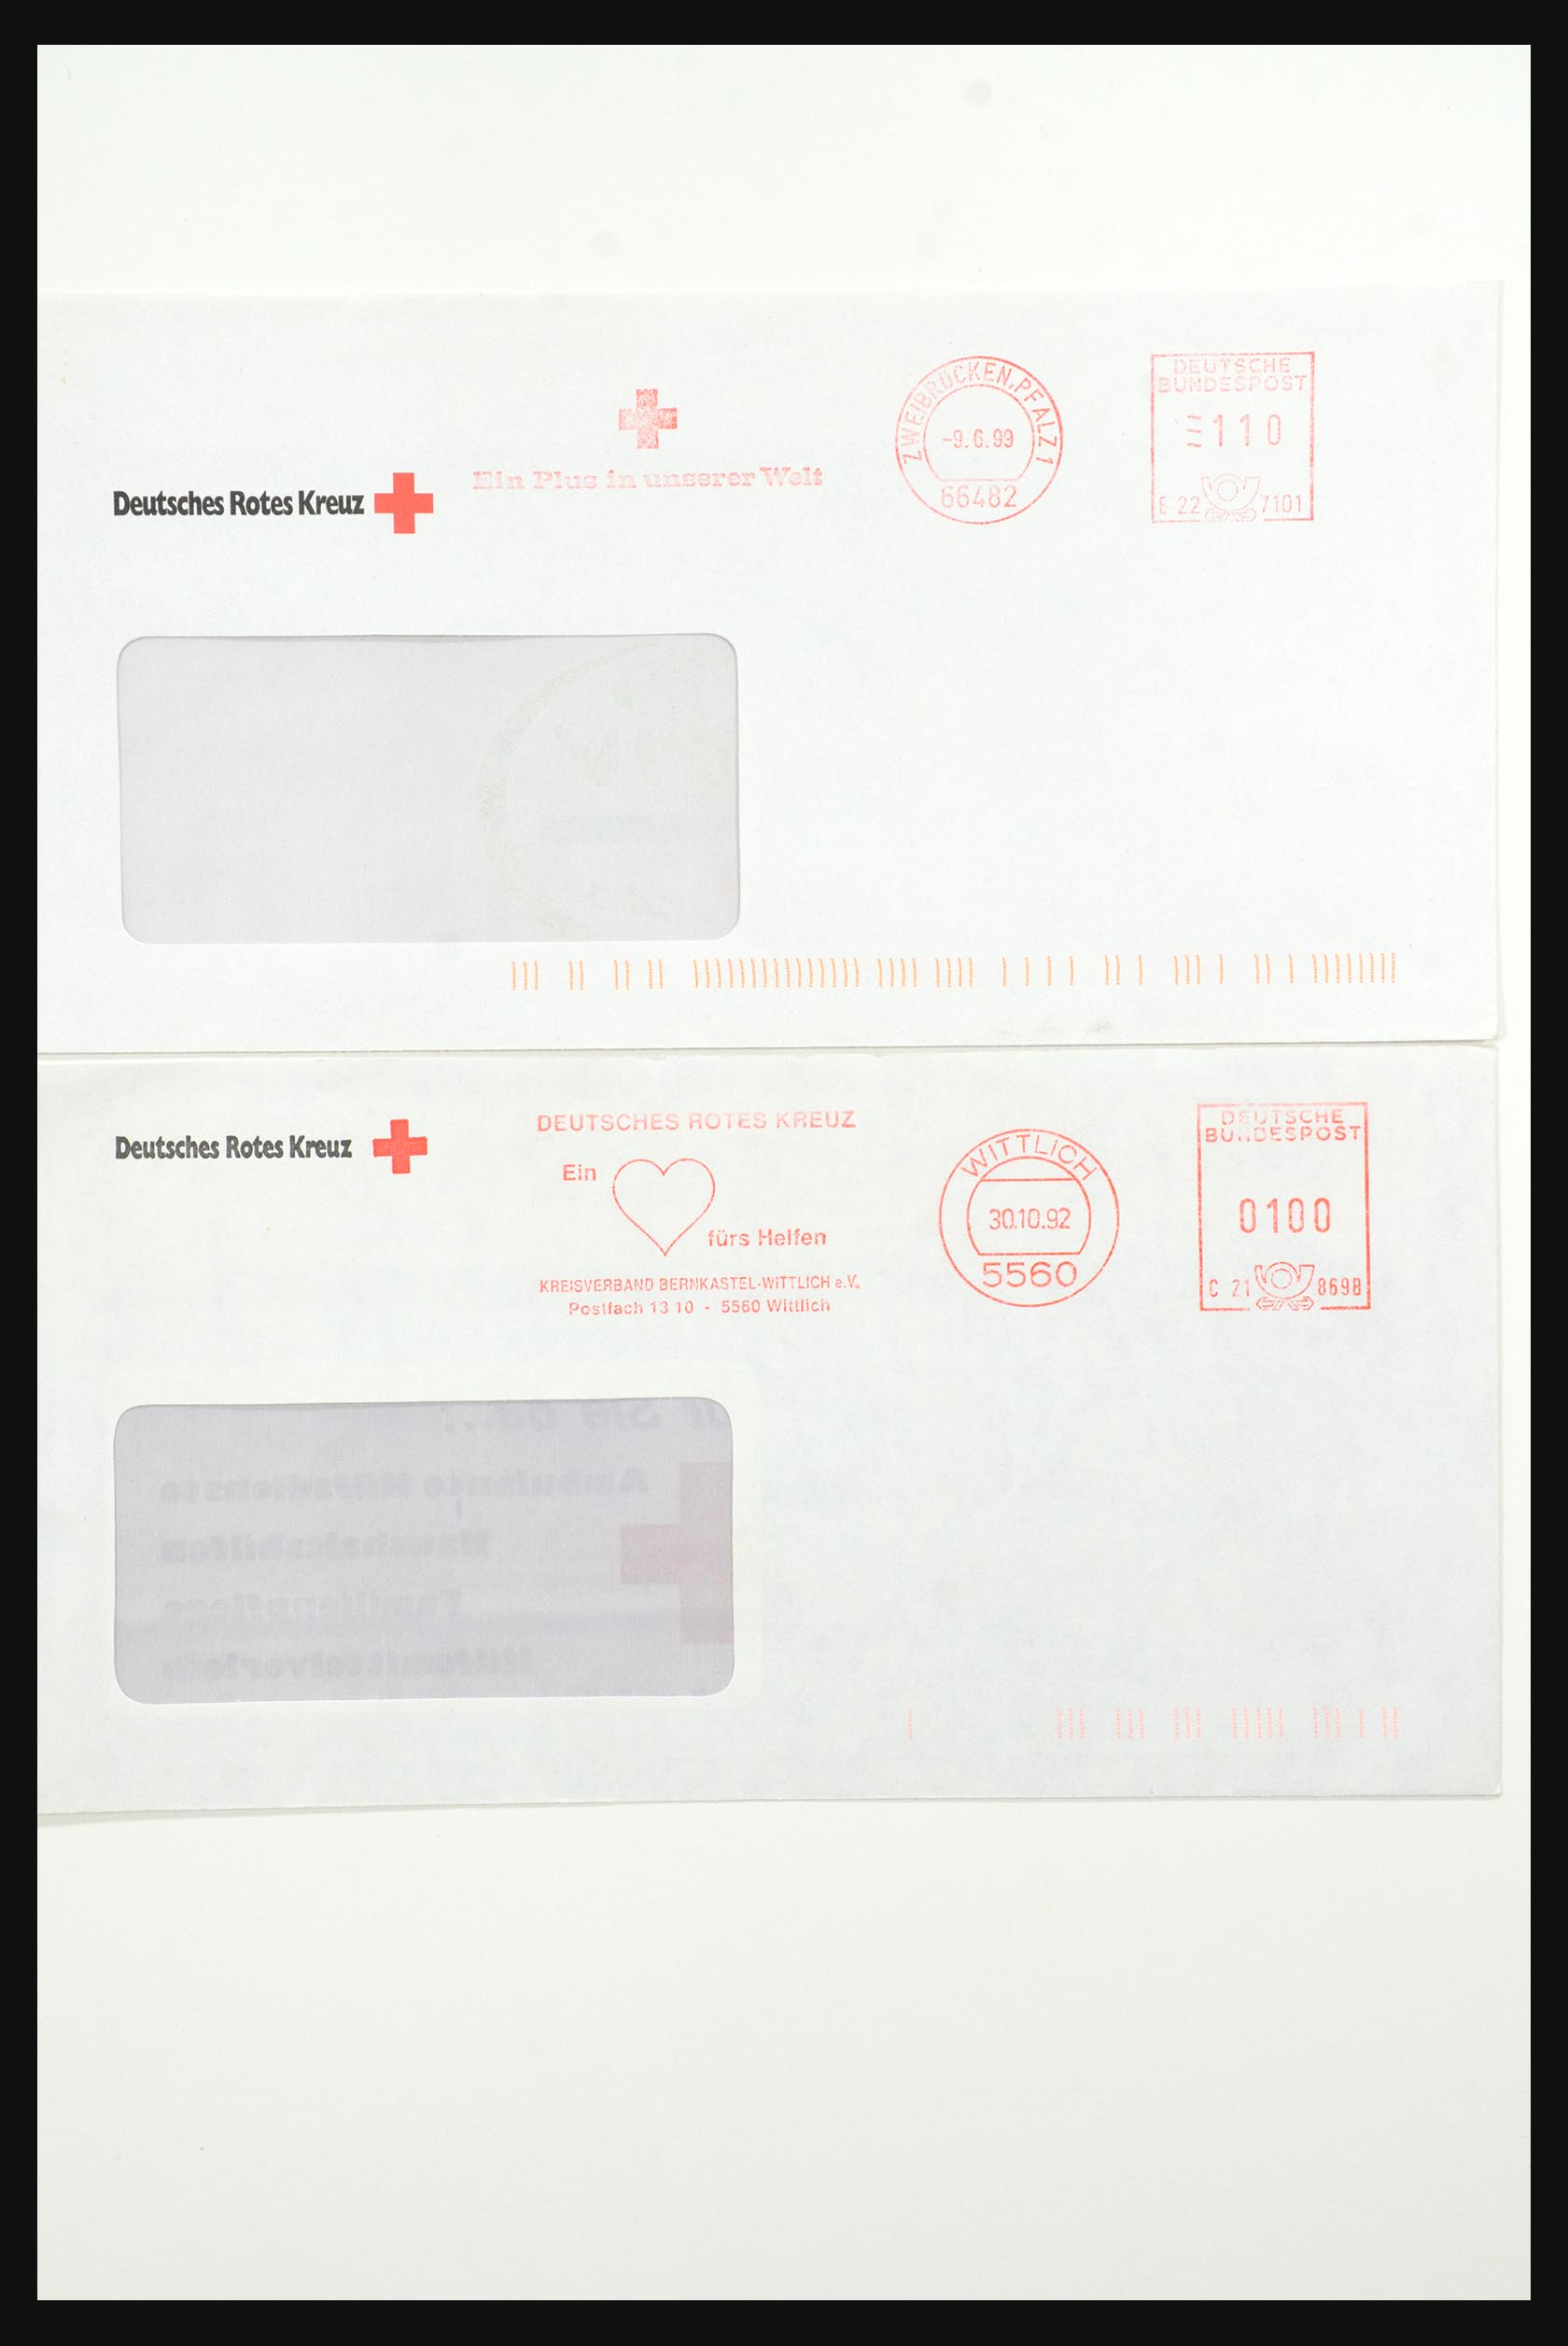 31365 1042 - 31365 Rode kruis brieven 1905-1975.